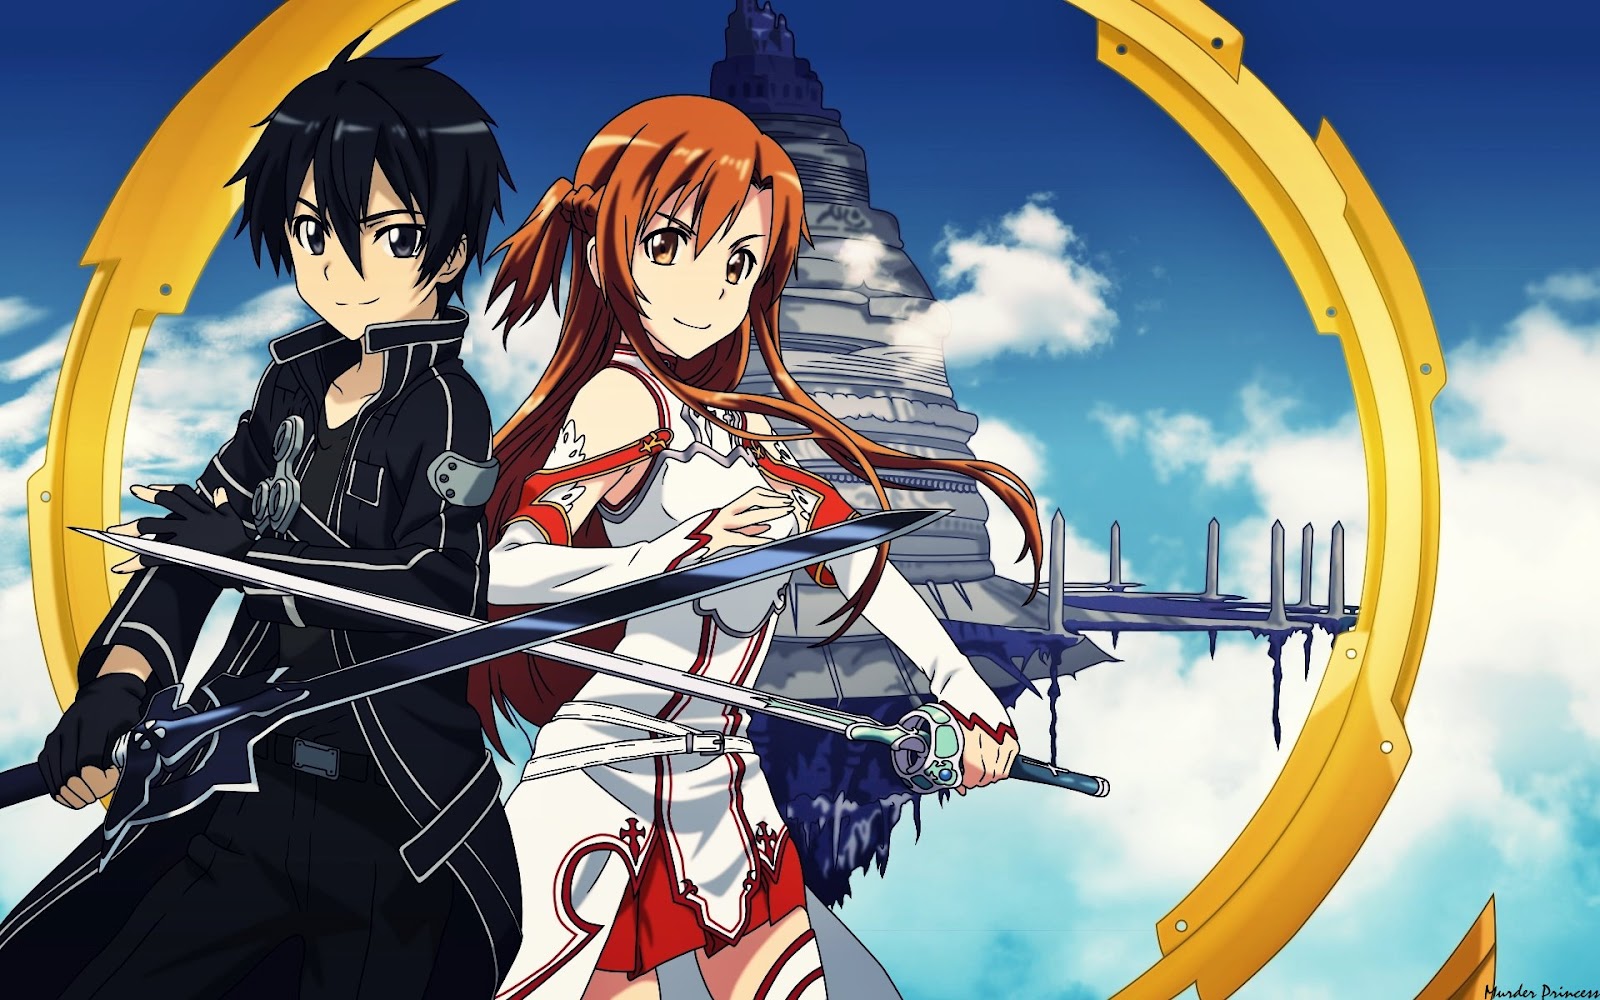 Sword Art Online temporada 3 - Ver todos los episodios online